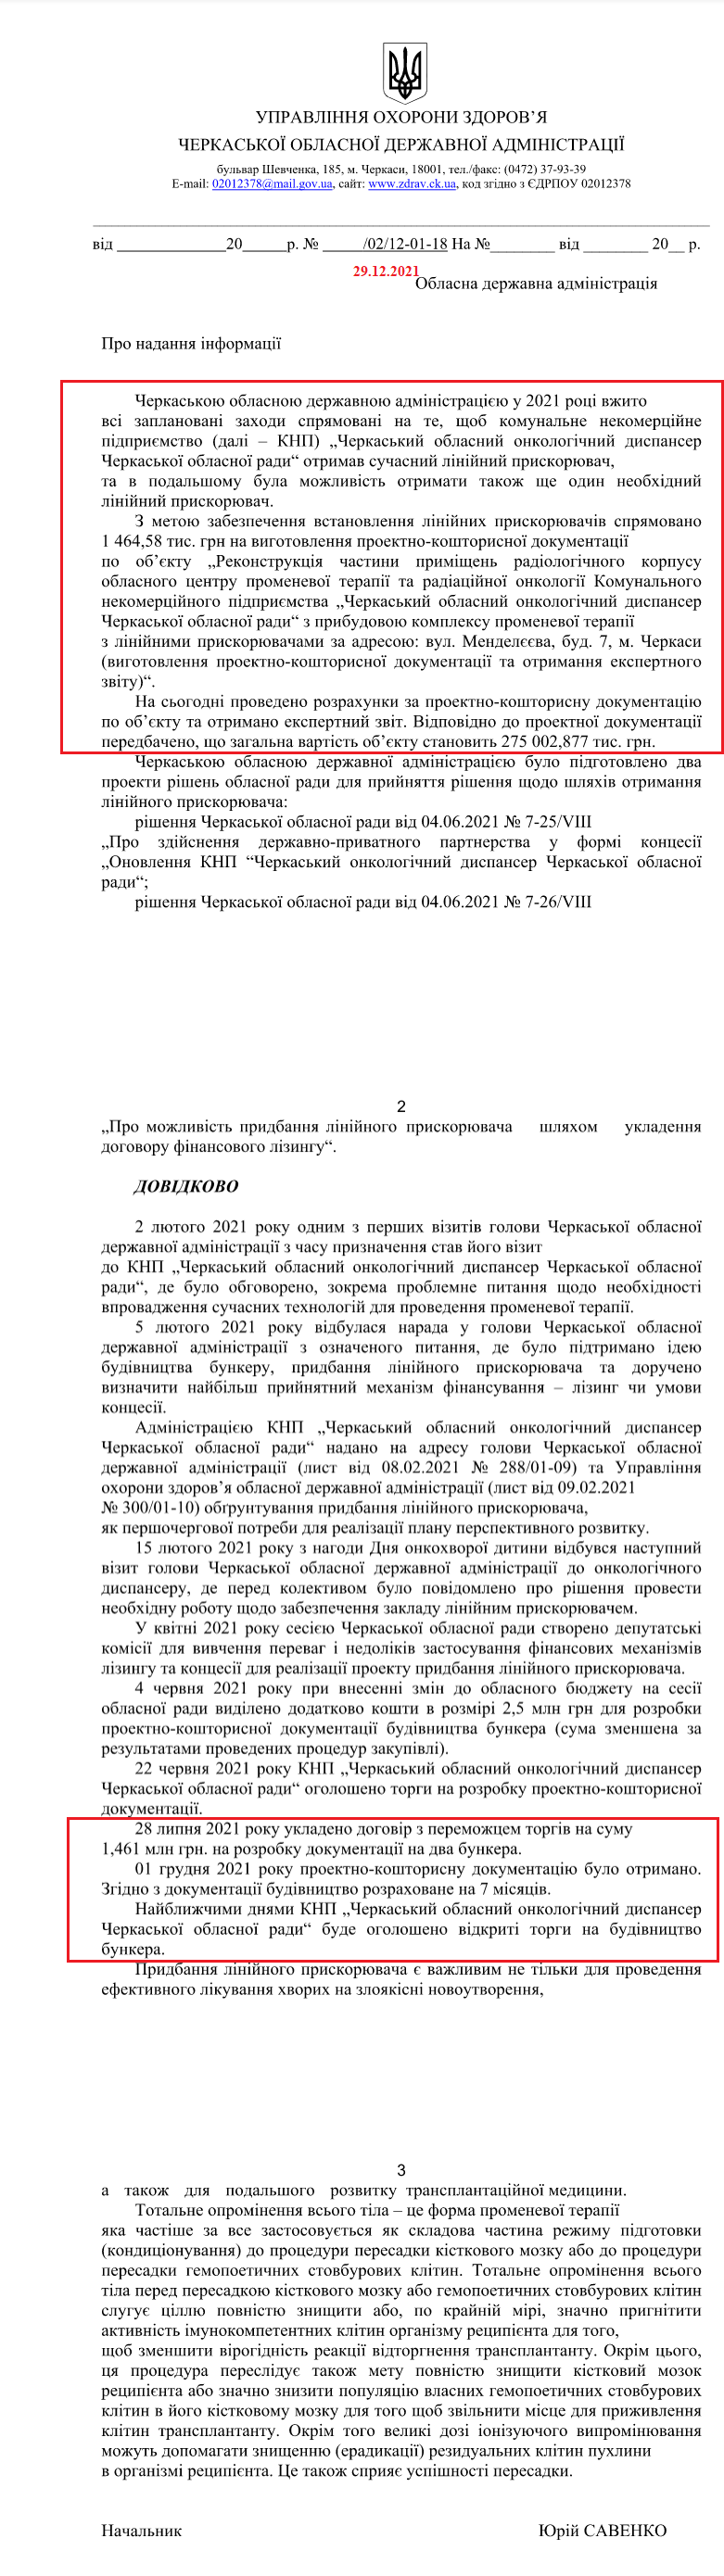 Лист Черкаської обласної державної адміністрації від 29 грудня 2021 року